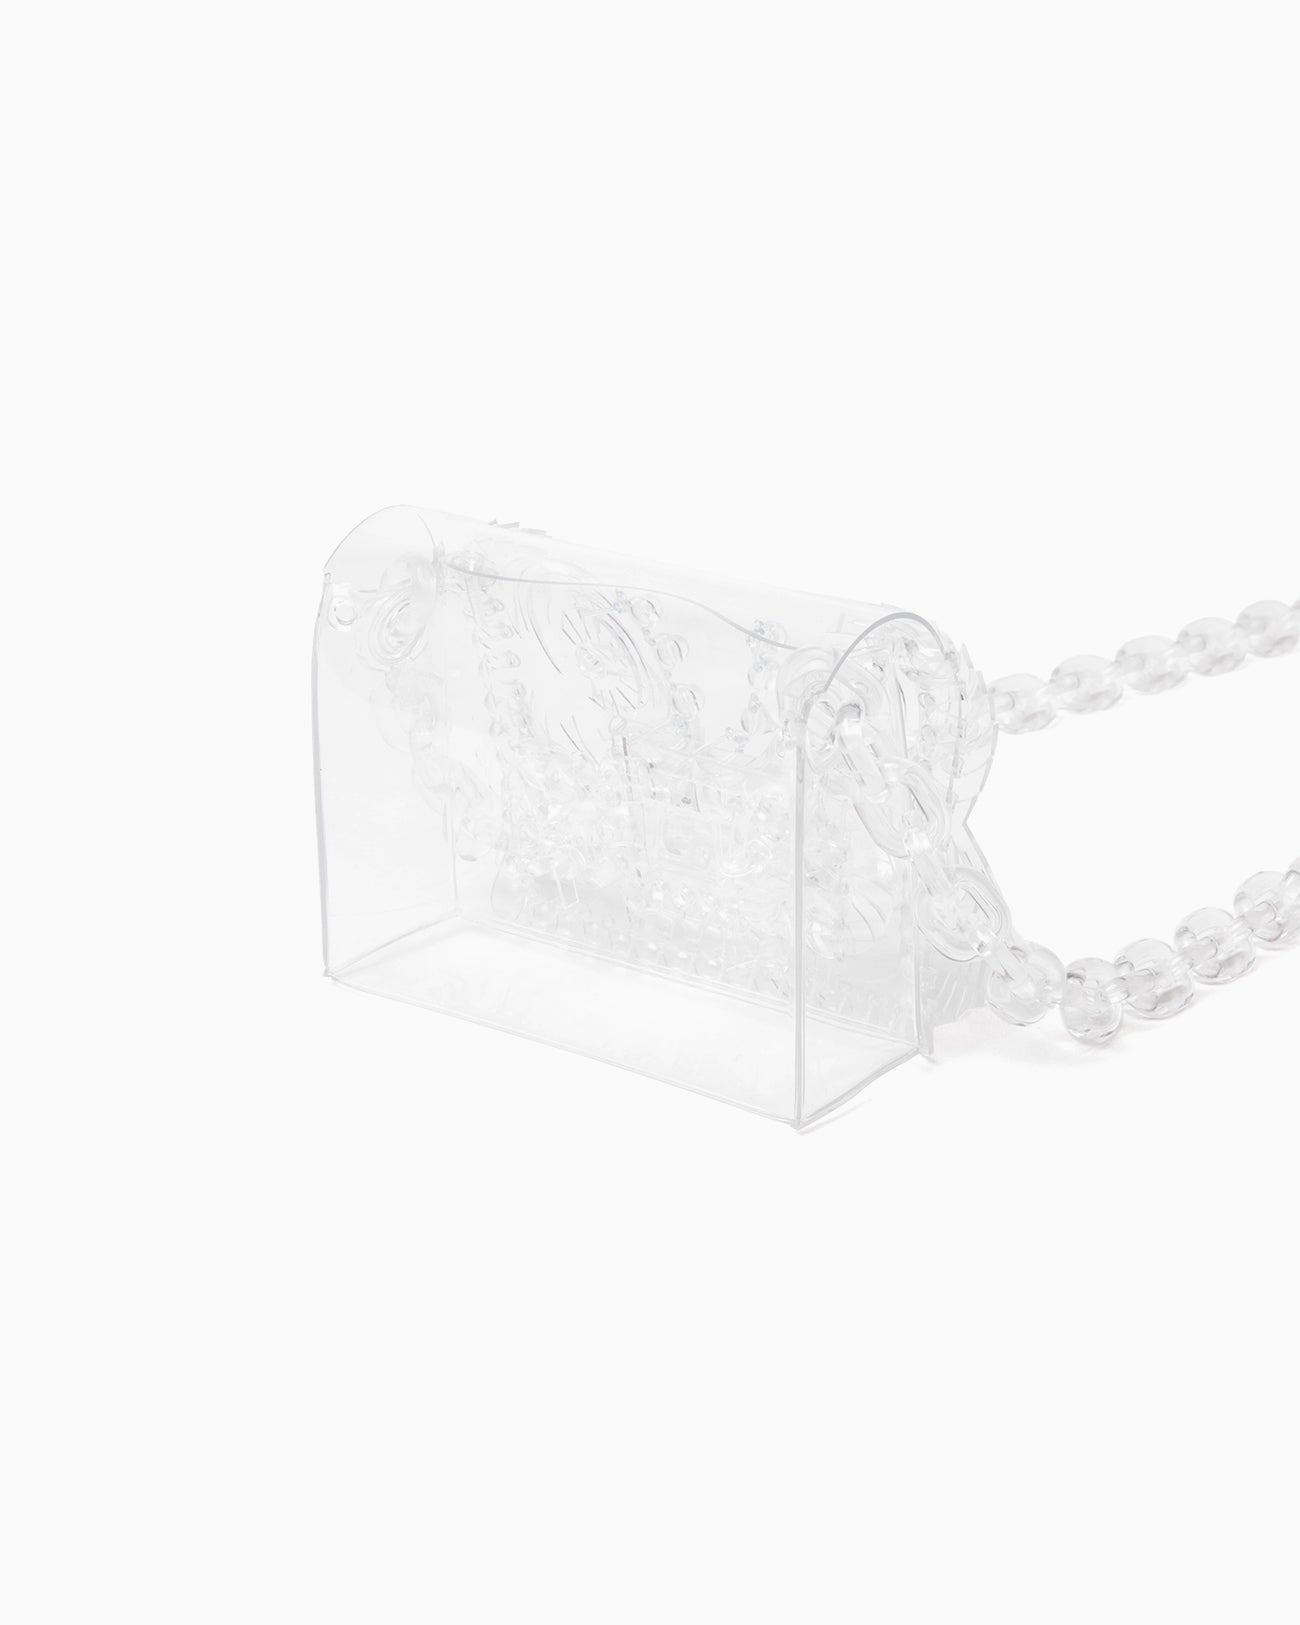 Transparent Sculptural Micro Chain Bag - clear